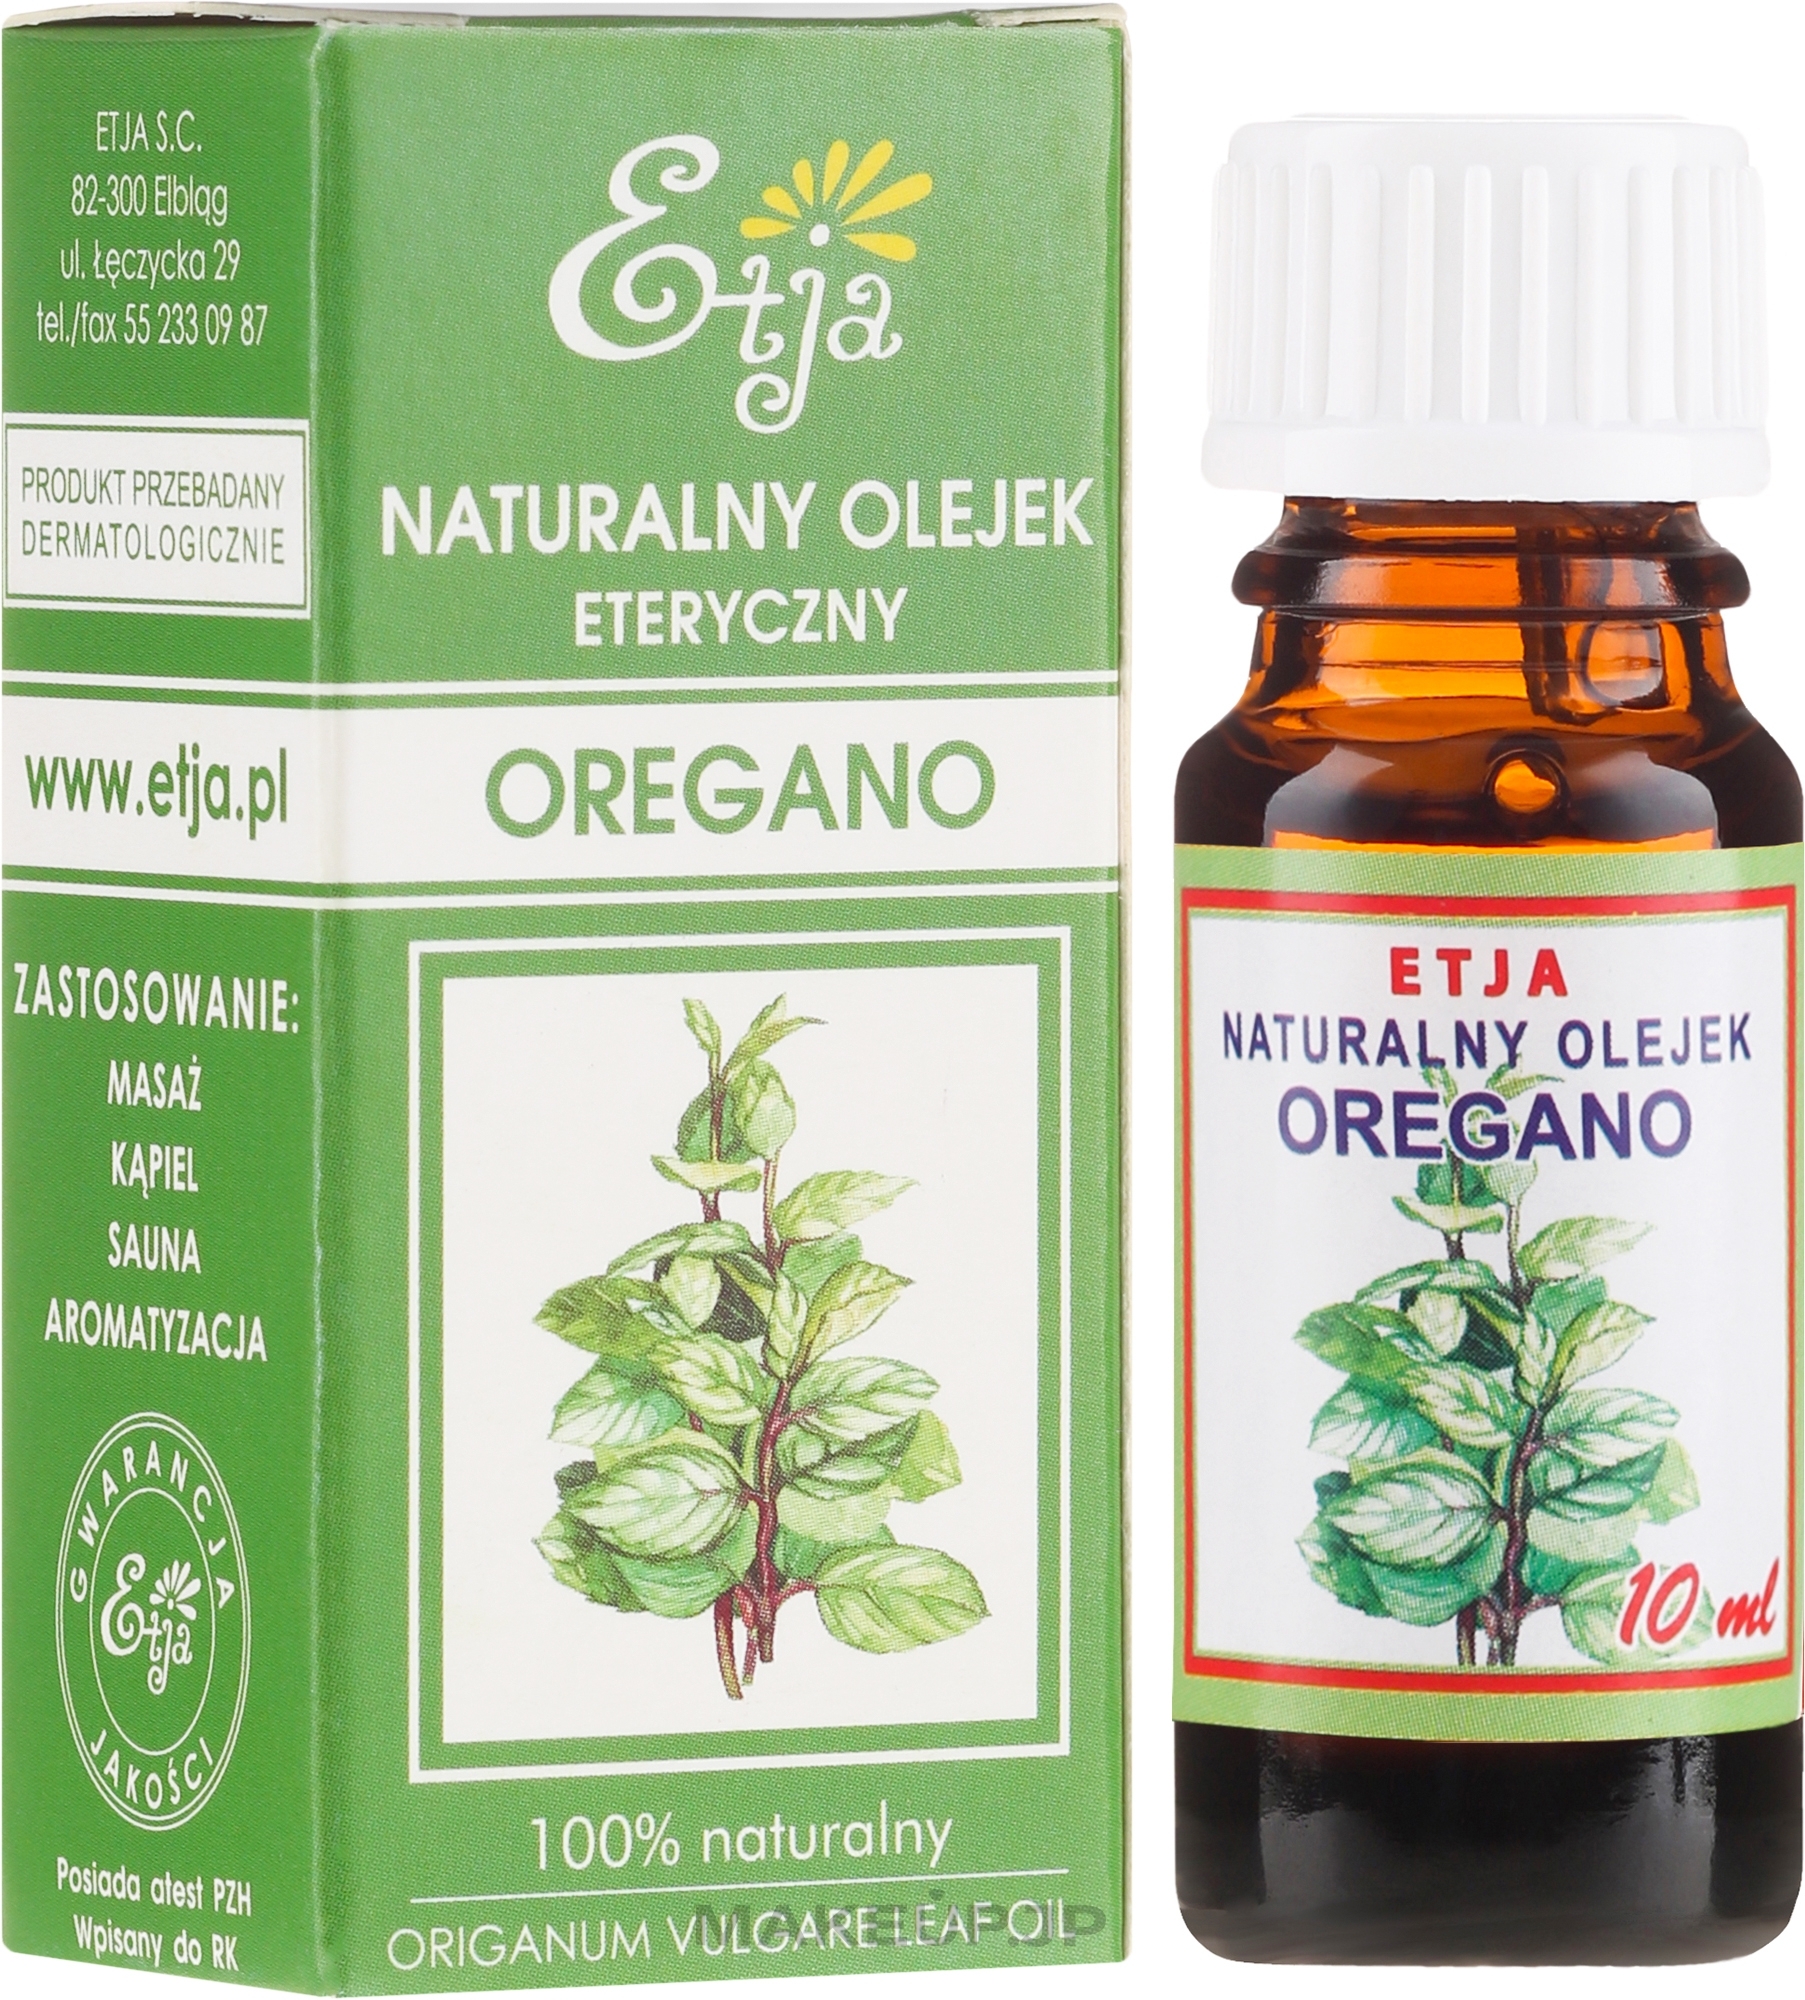 Natural Essential Oil "Oregano" - Etja Natural Origanum Vulgare Leaf Oil — photo 10 ml